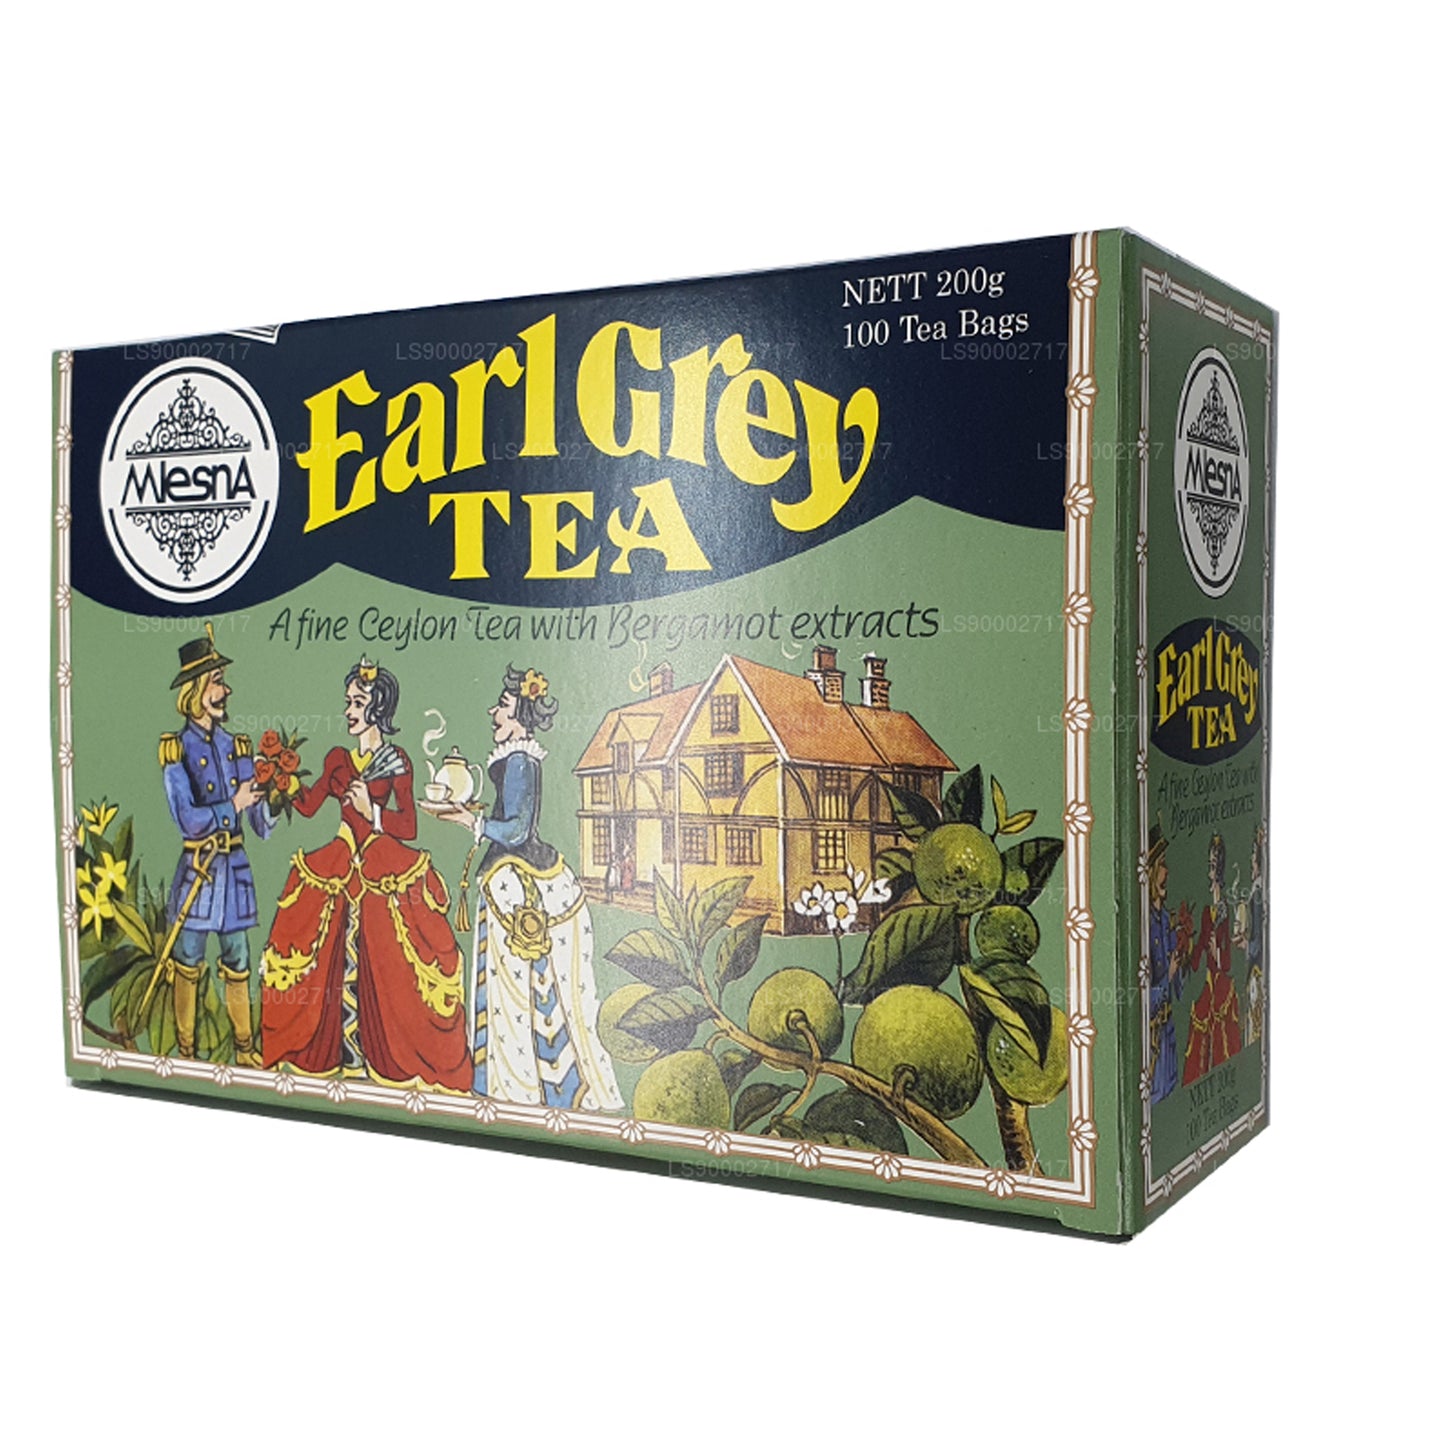 Torebki herbaty Mlesna Earl Grey